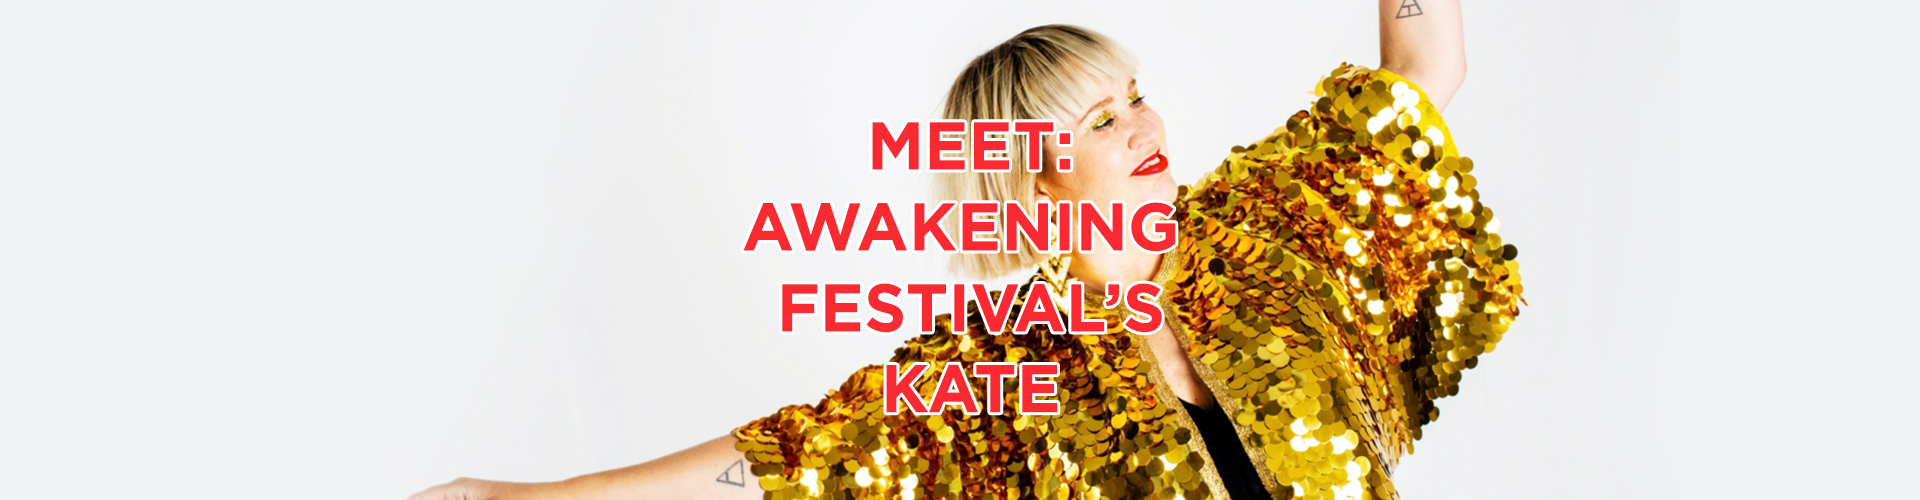 Meet: Awakening Festival's Kate